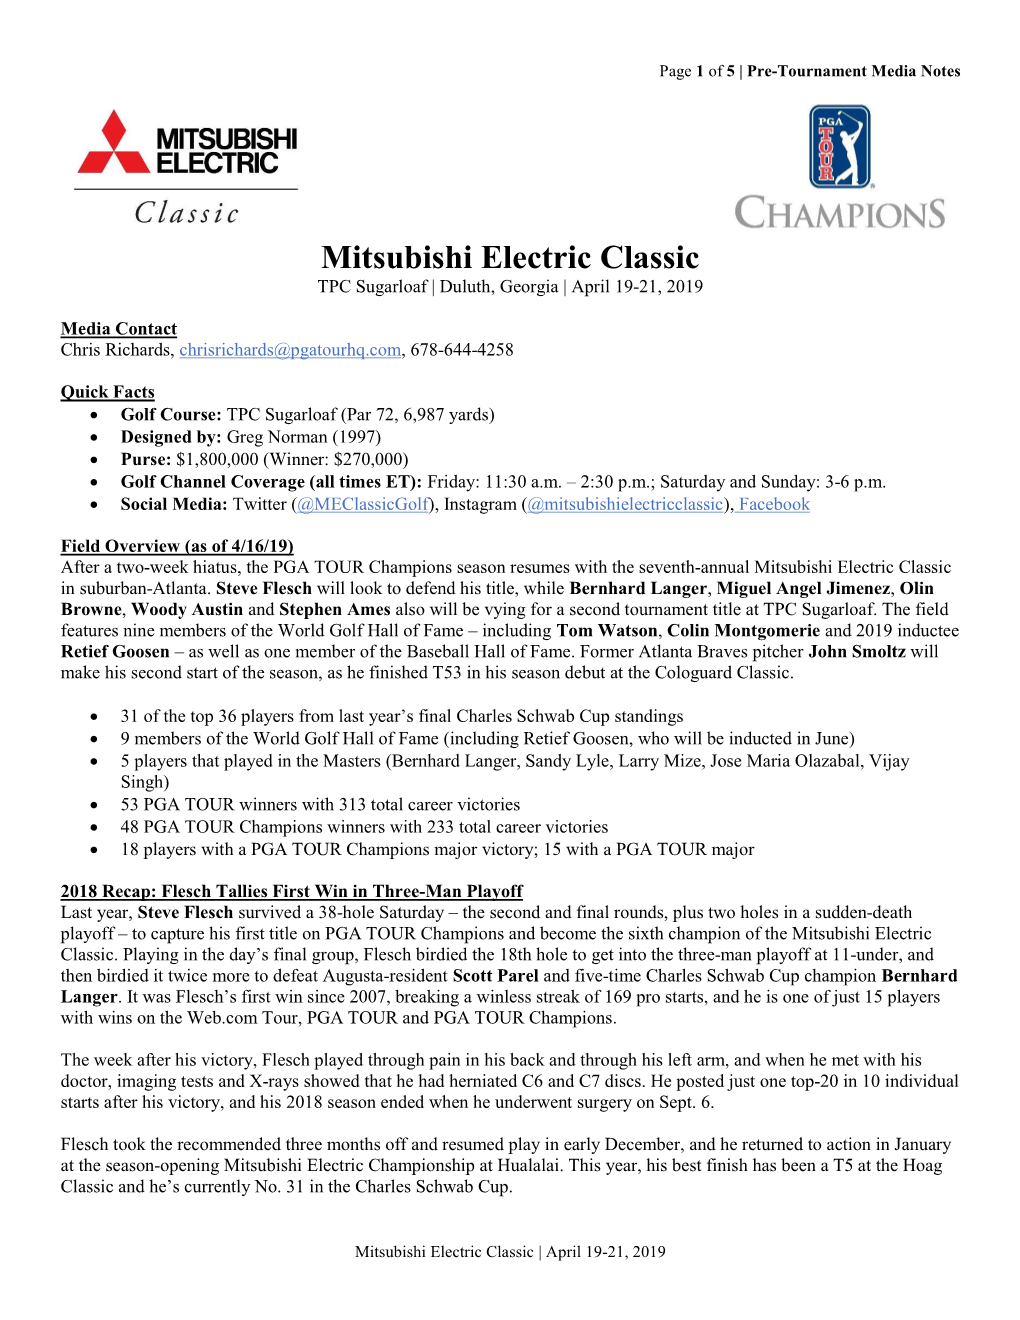 Mitsubishi Electric Classic TPC Sugarloaf | Duluth, Georgia | April 19-21, 2019